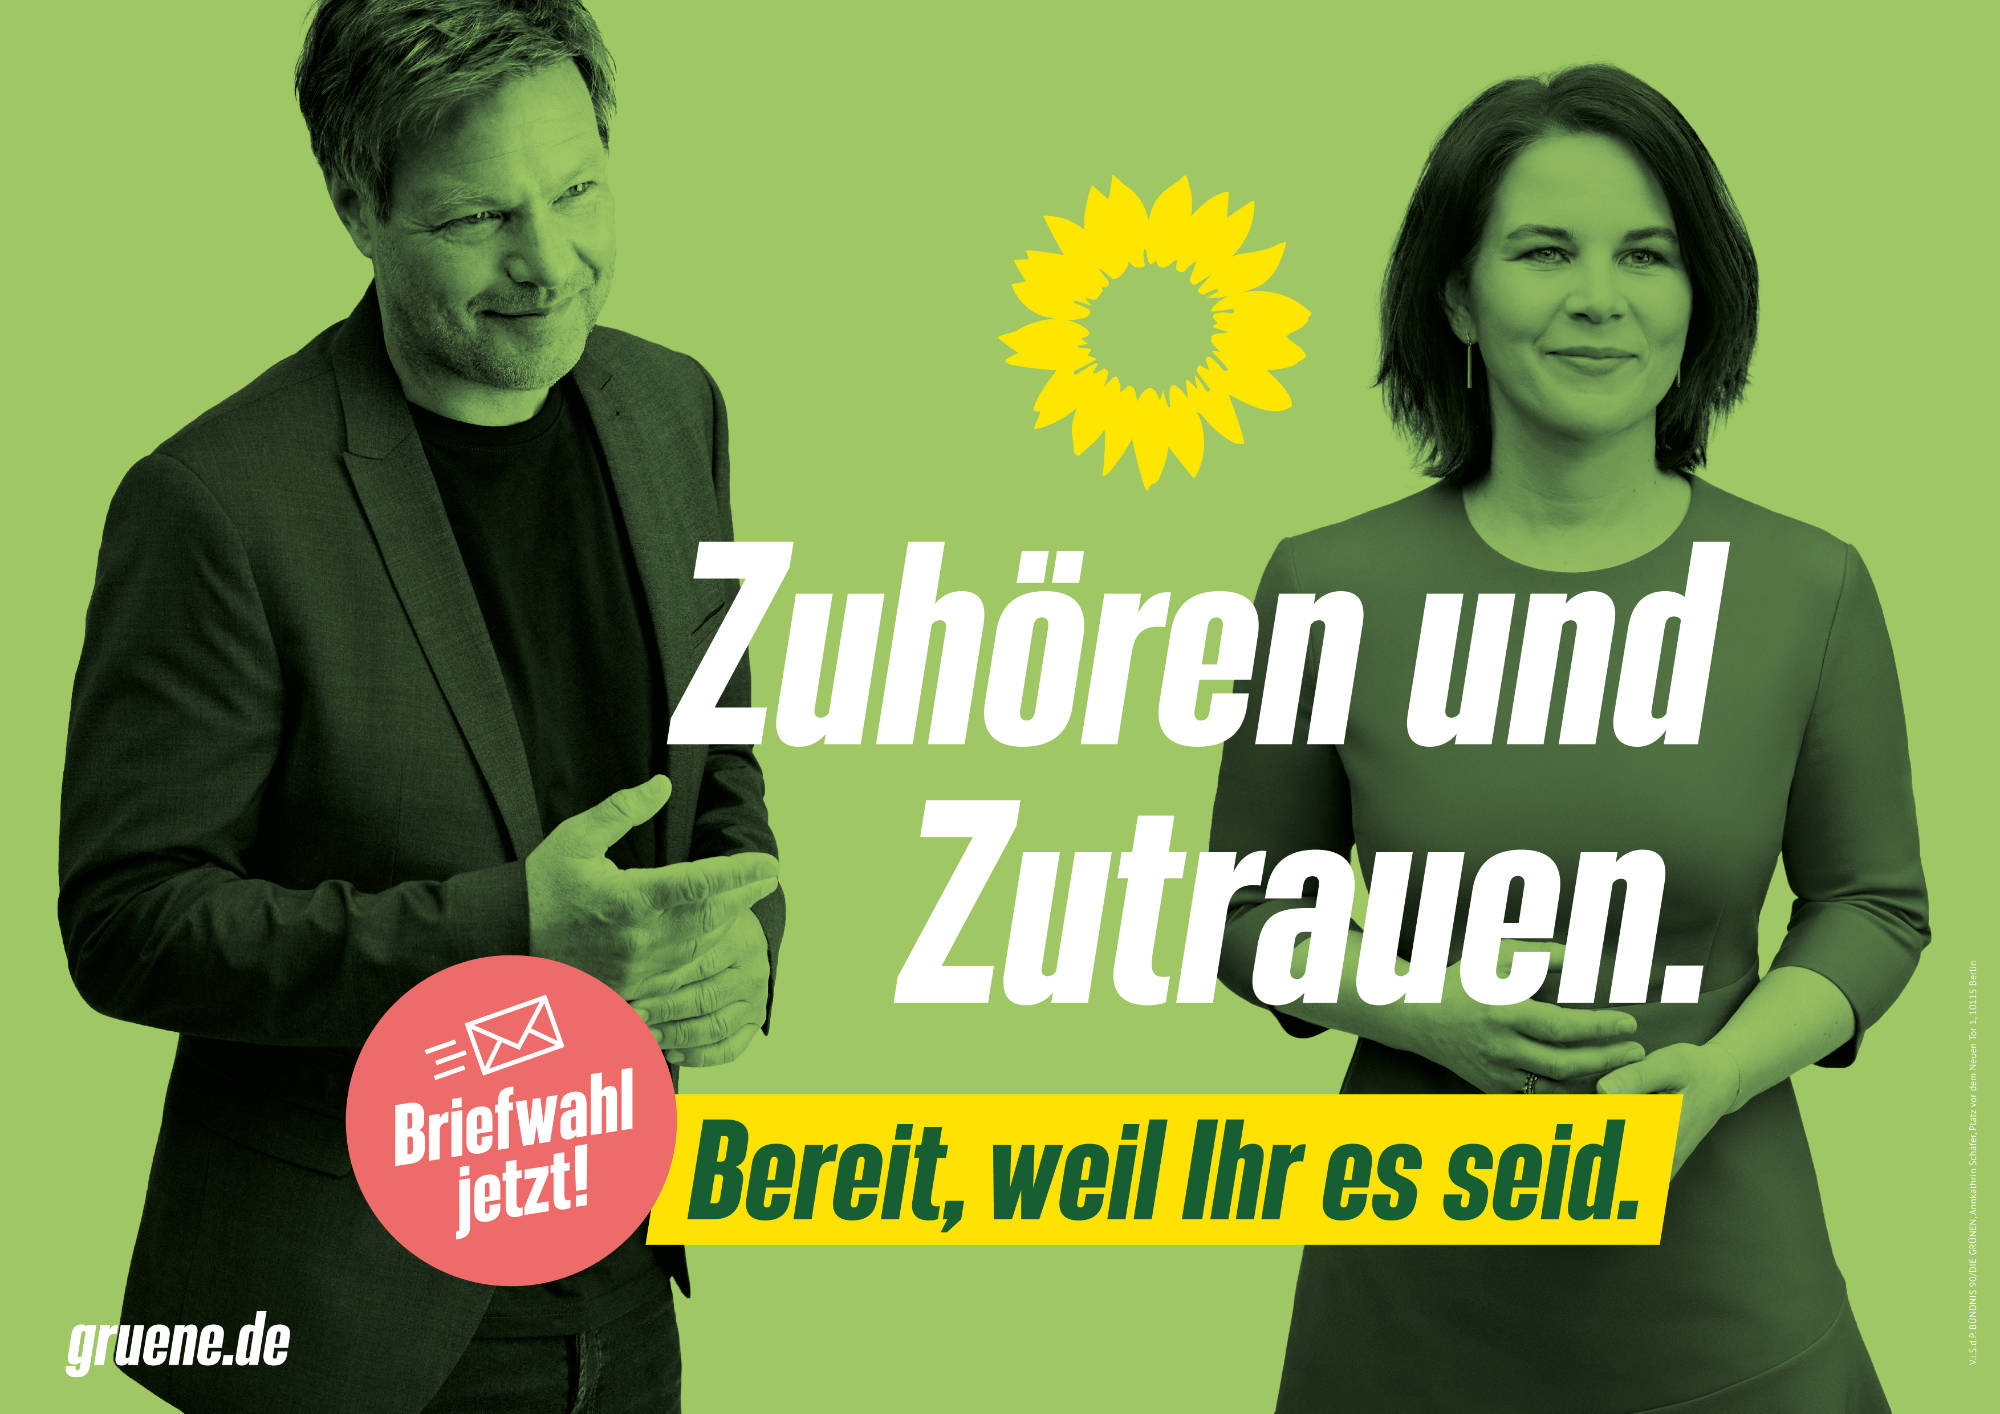 Bündnis90/Die Grünen Plakat Bundestagswahl 2021 – Zuhören und Zutrauen